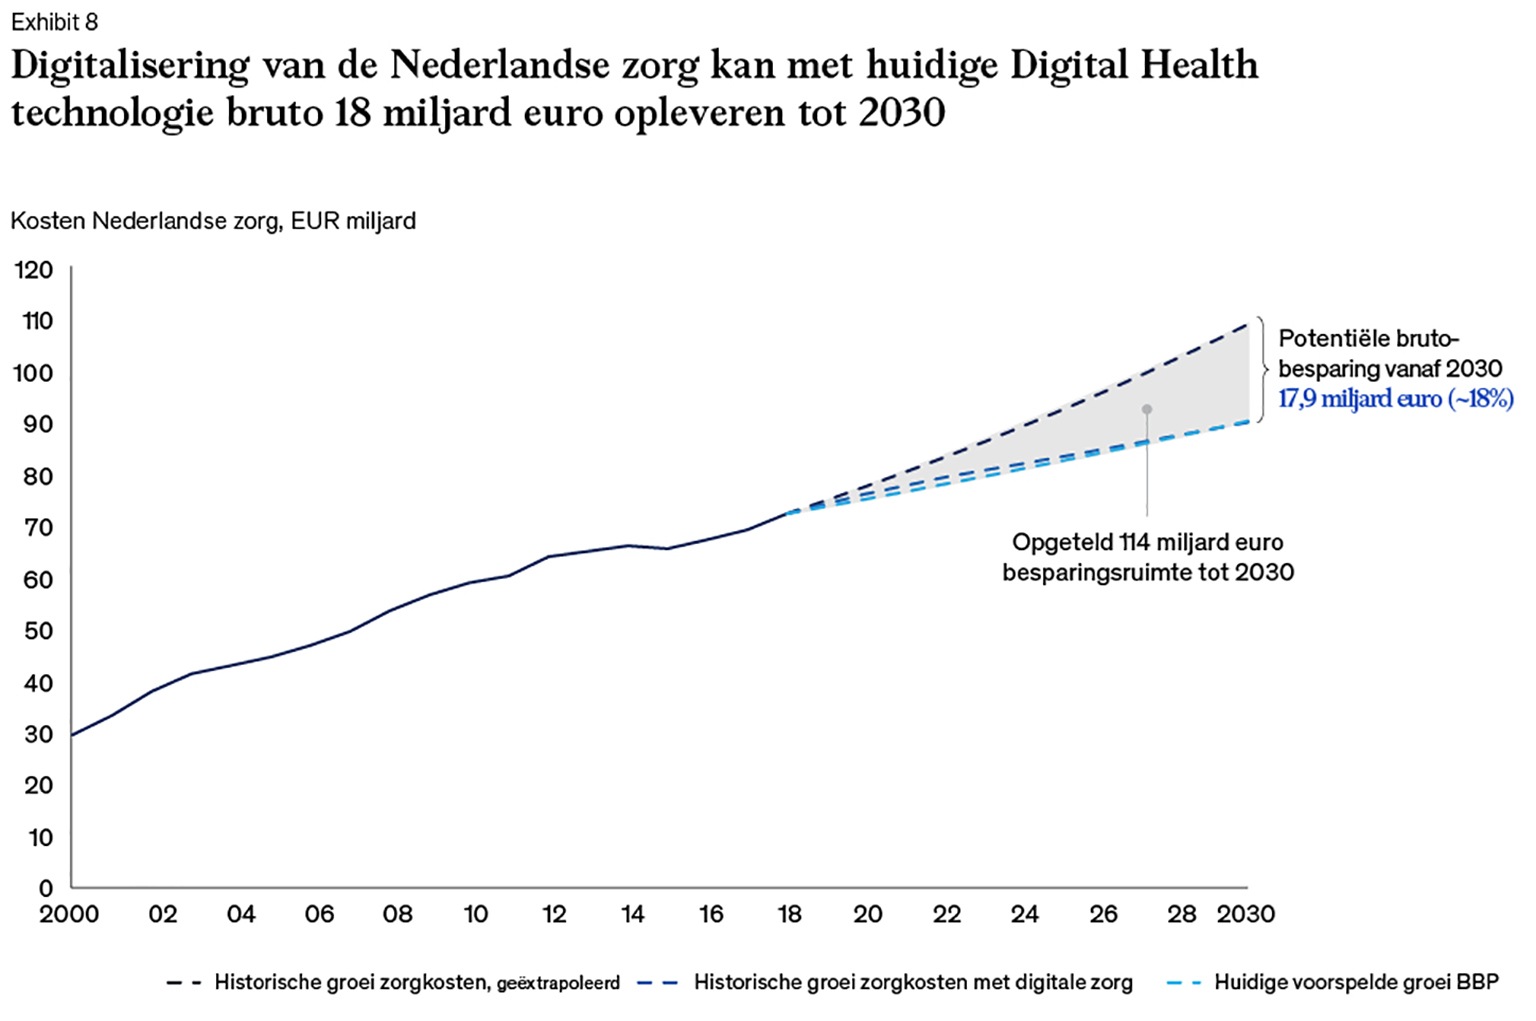 Digitale zorg in Nederland